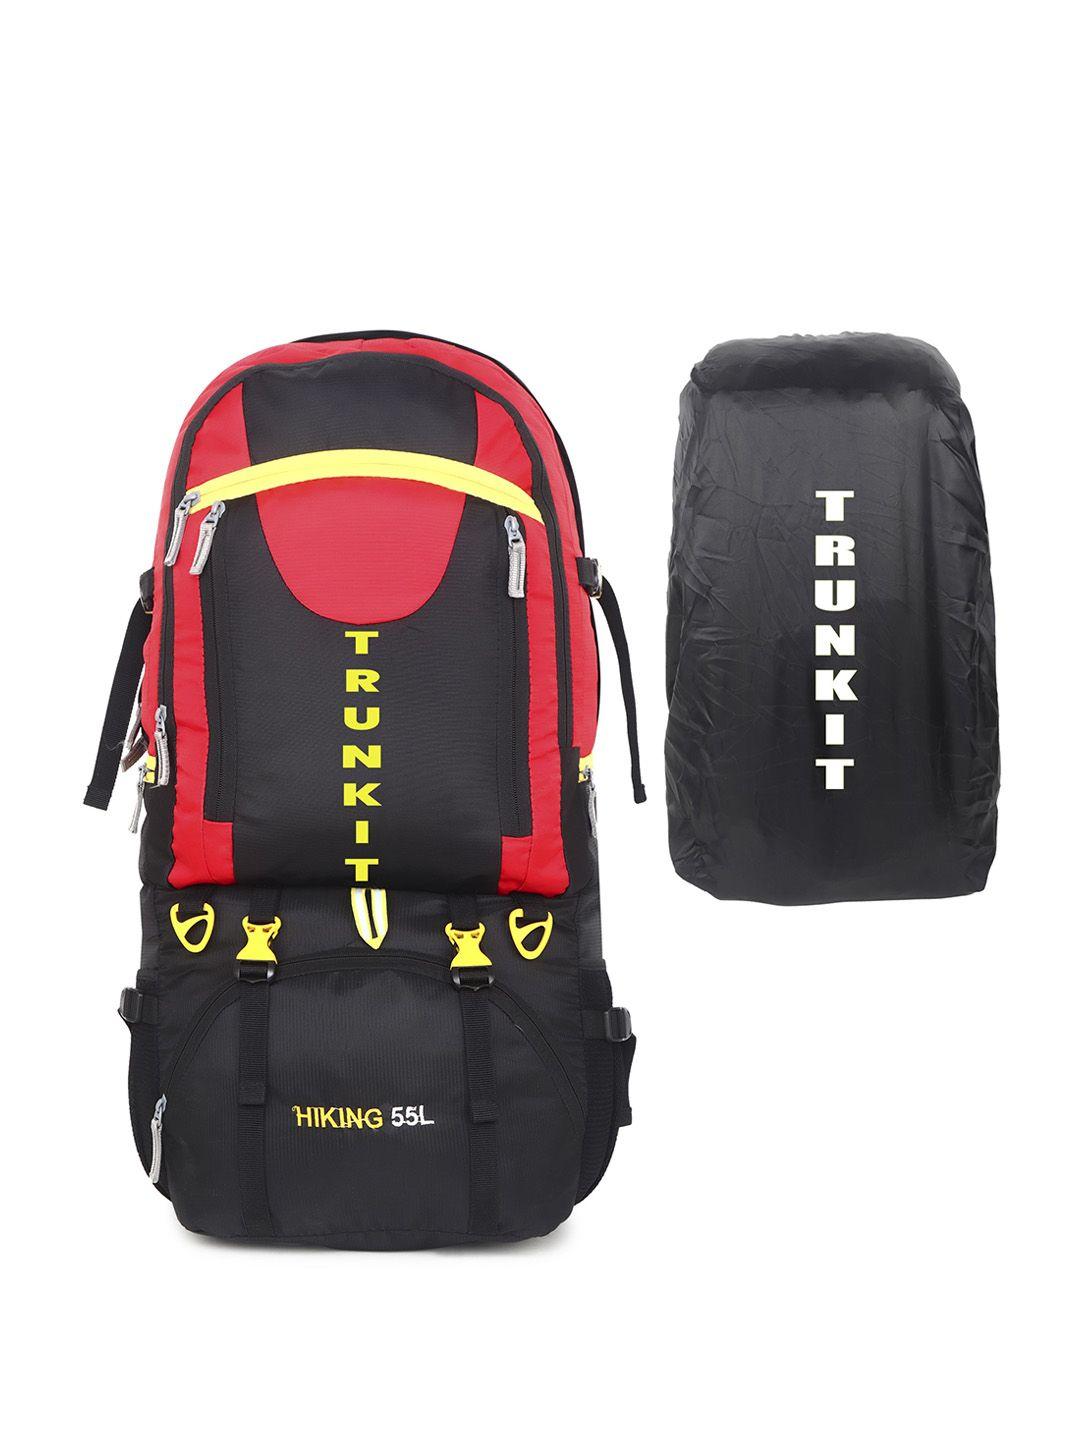 trunkit colourblocked waterproof rucksack